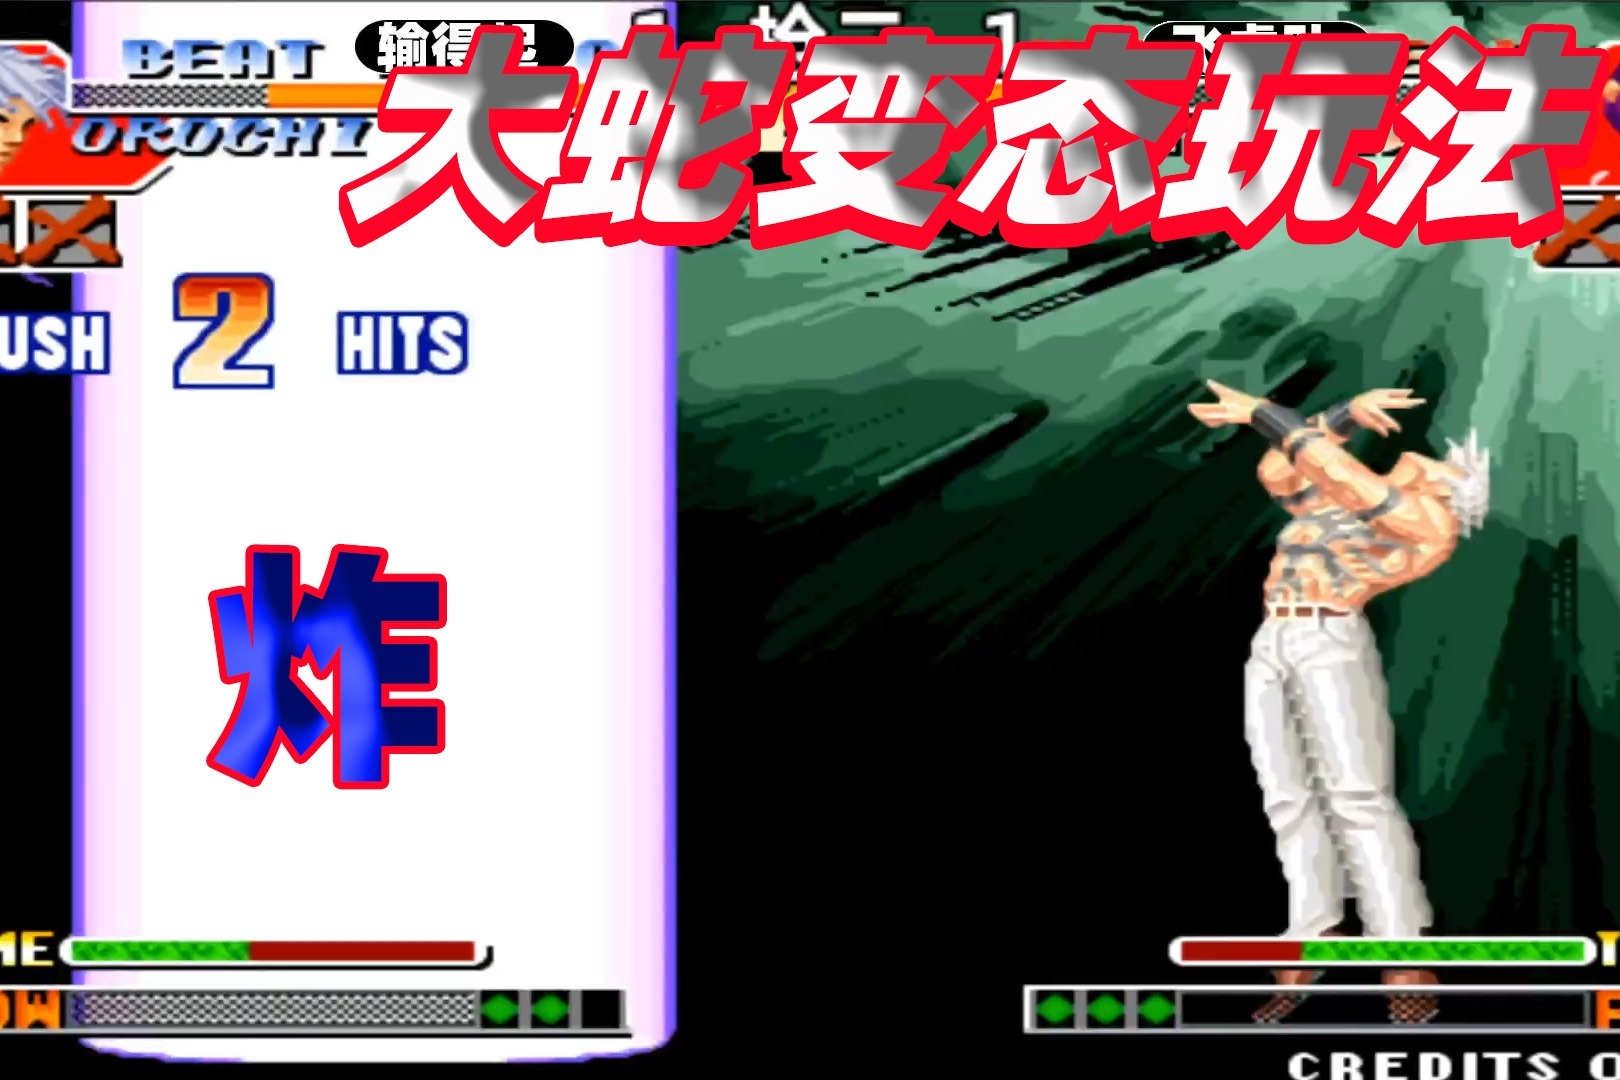 拳皇97 The King of Fighters '97基本共通操作 -超能街机